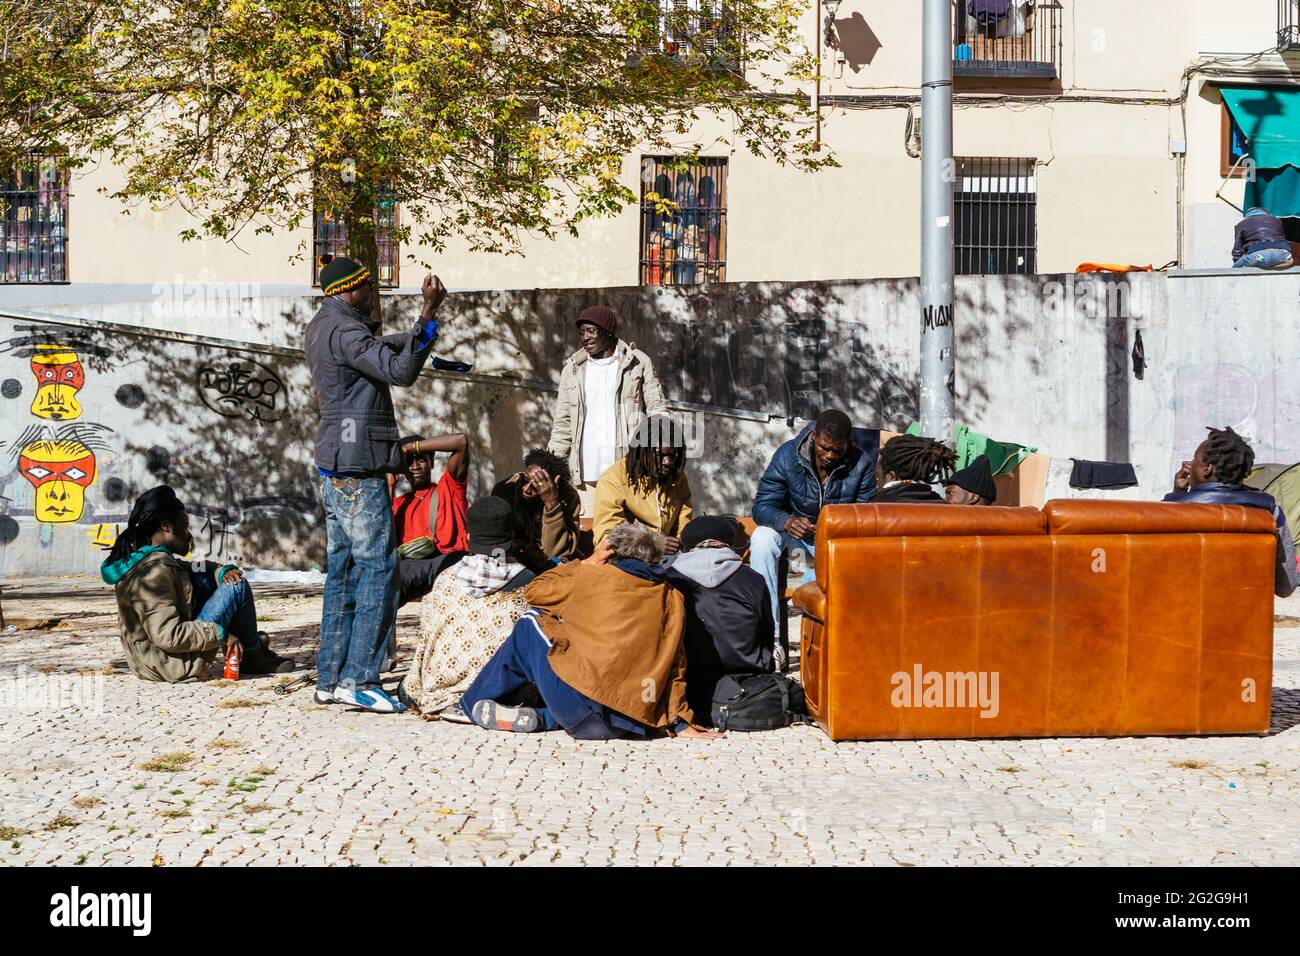 Gruppe von Einwanderern, die auf einem Platz chatten. Lavapiés ist ein historisches Viertel in der Stadt Madrid. Jetzt hat es die große Einwandererbevölkerung gegeben Stockfoto